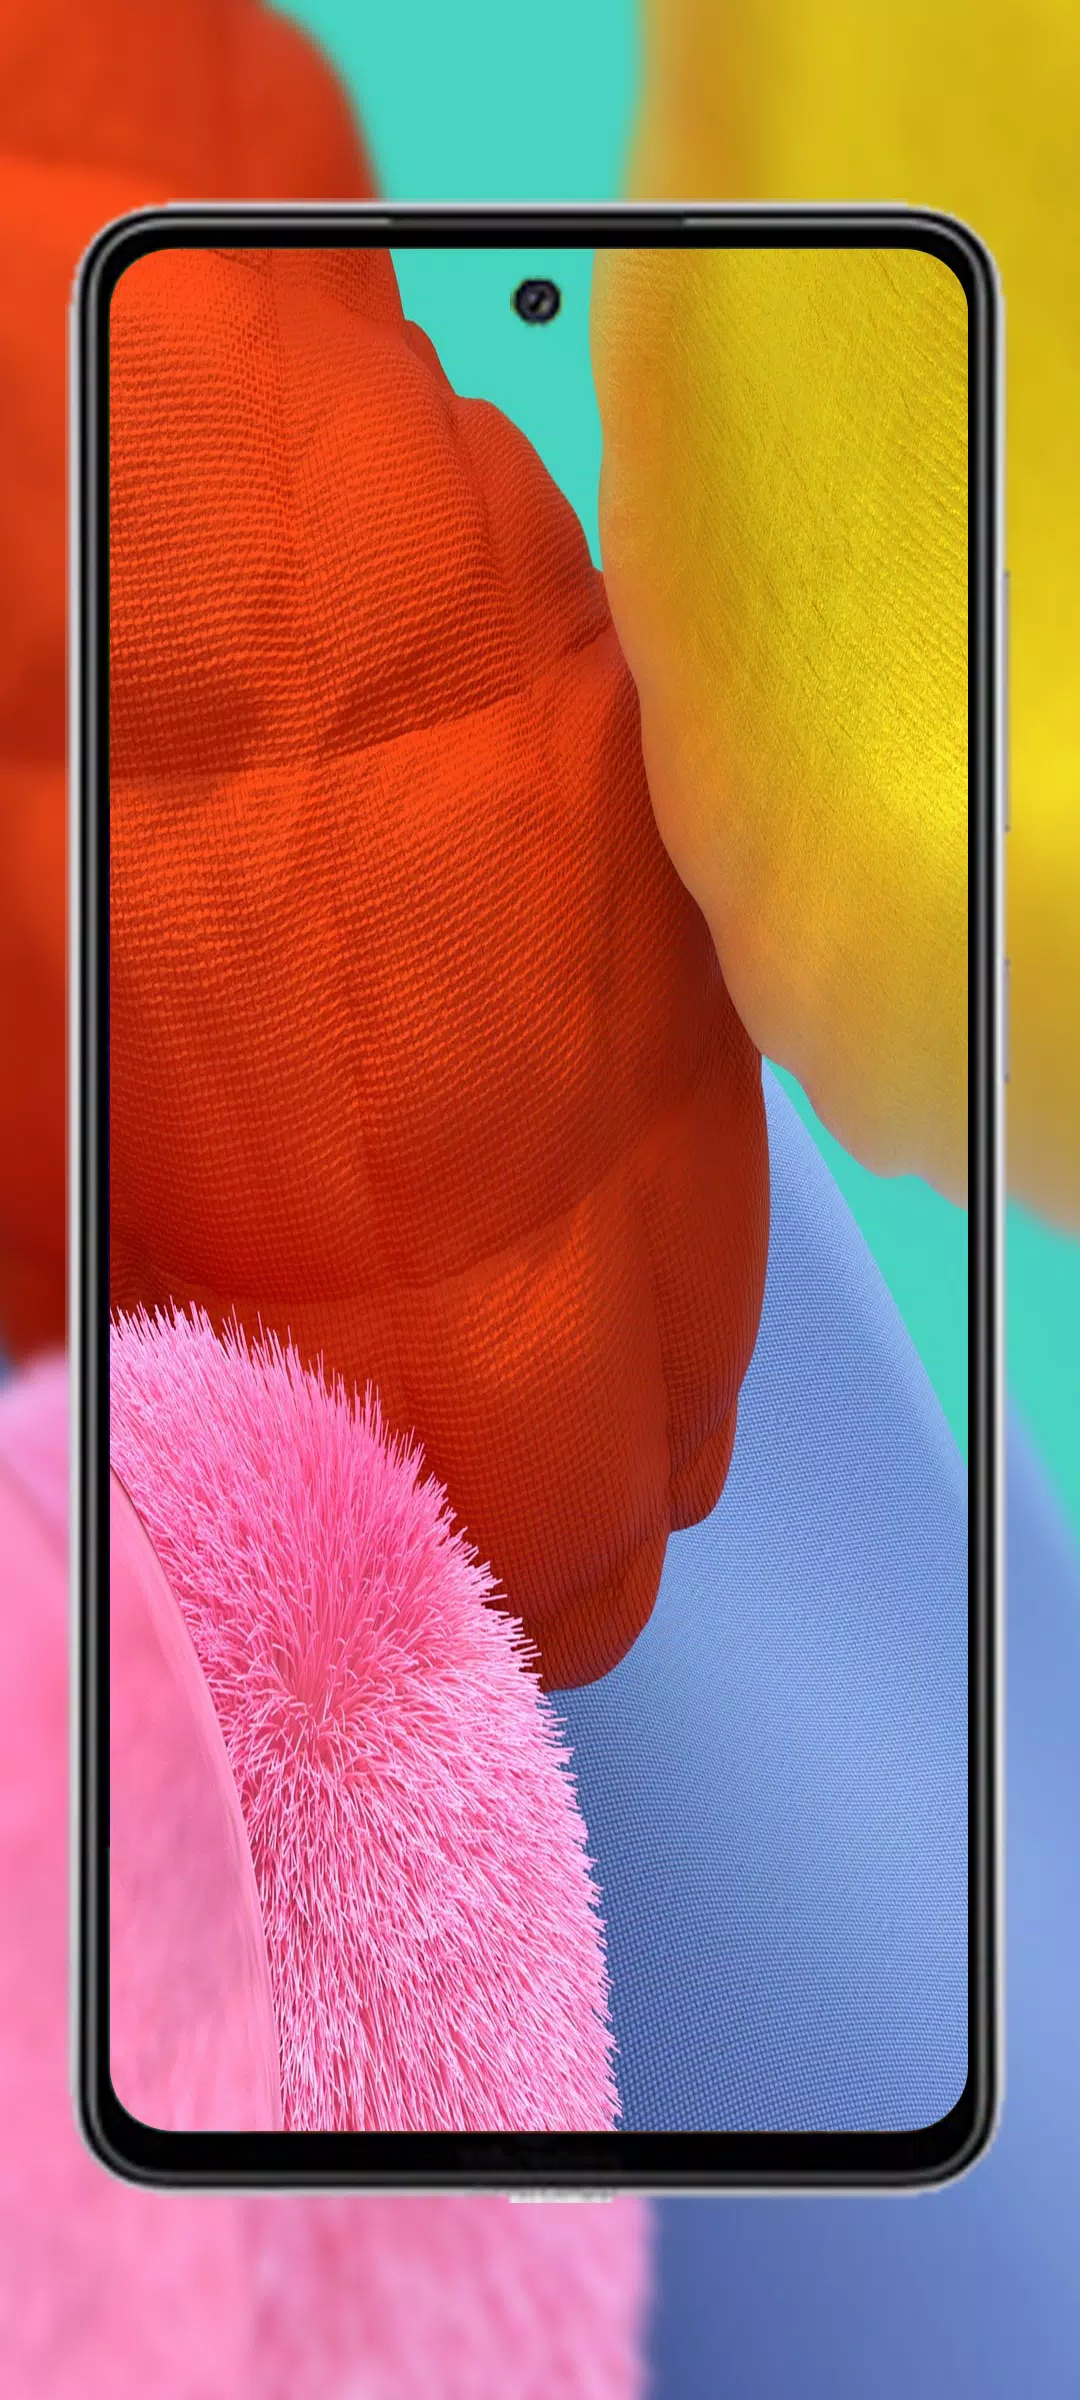 APK Galaxy A52 Wallpaper mang đến cho bạn hàng ngàn hình nền độc đáo, đa dạng về màu sắc và chủ đề. Bạn có thể dễ dàng tải và cài đặt những bức ảnh nền ưng ý nhất cho chiếc smartphone Samsung A52 của mình. Khám phá ngay!